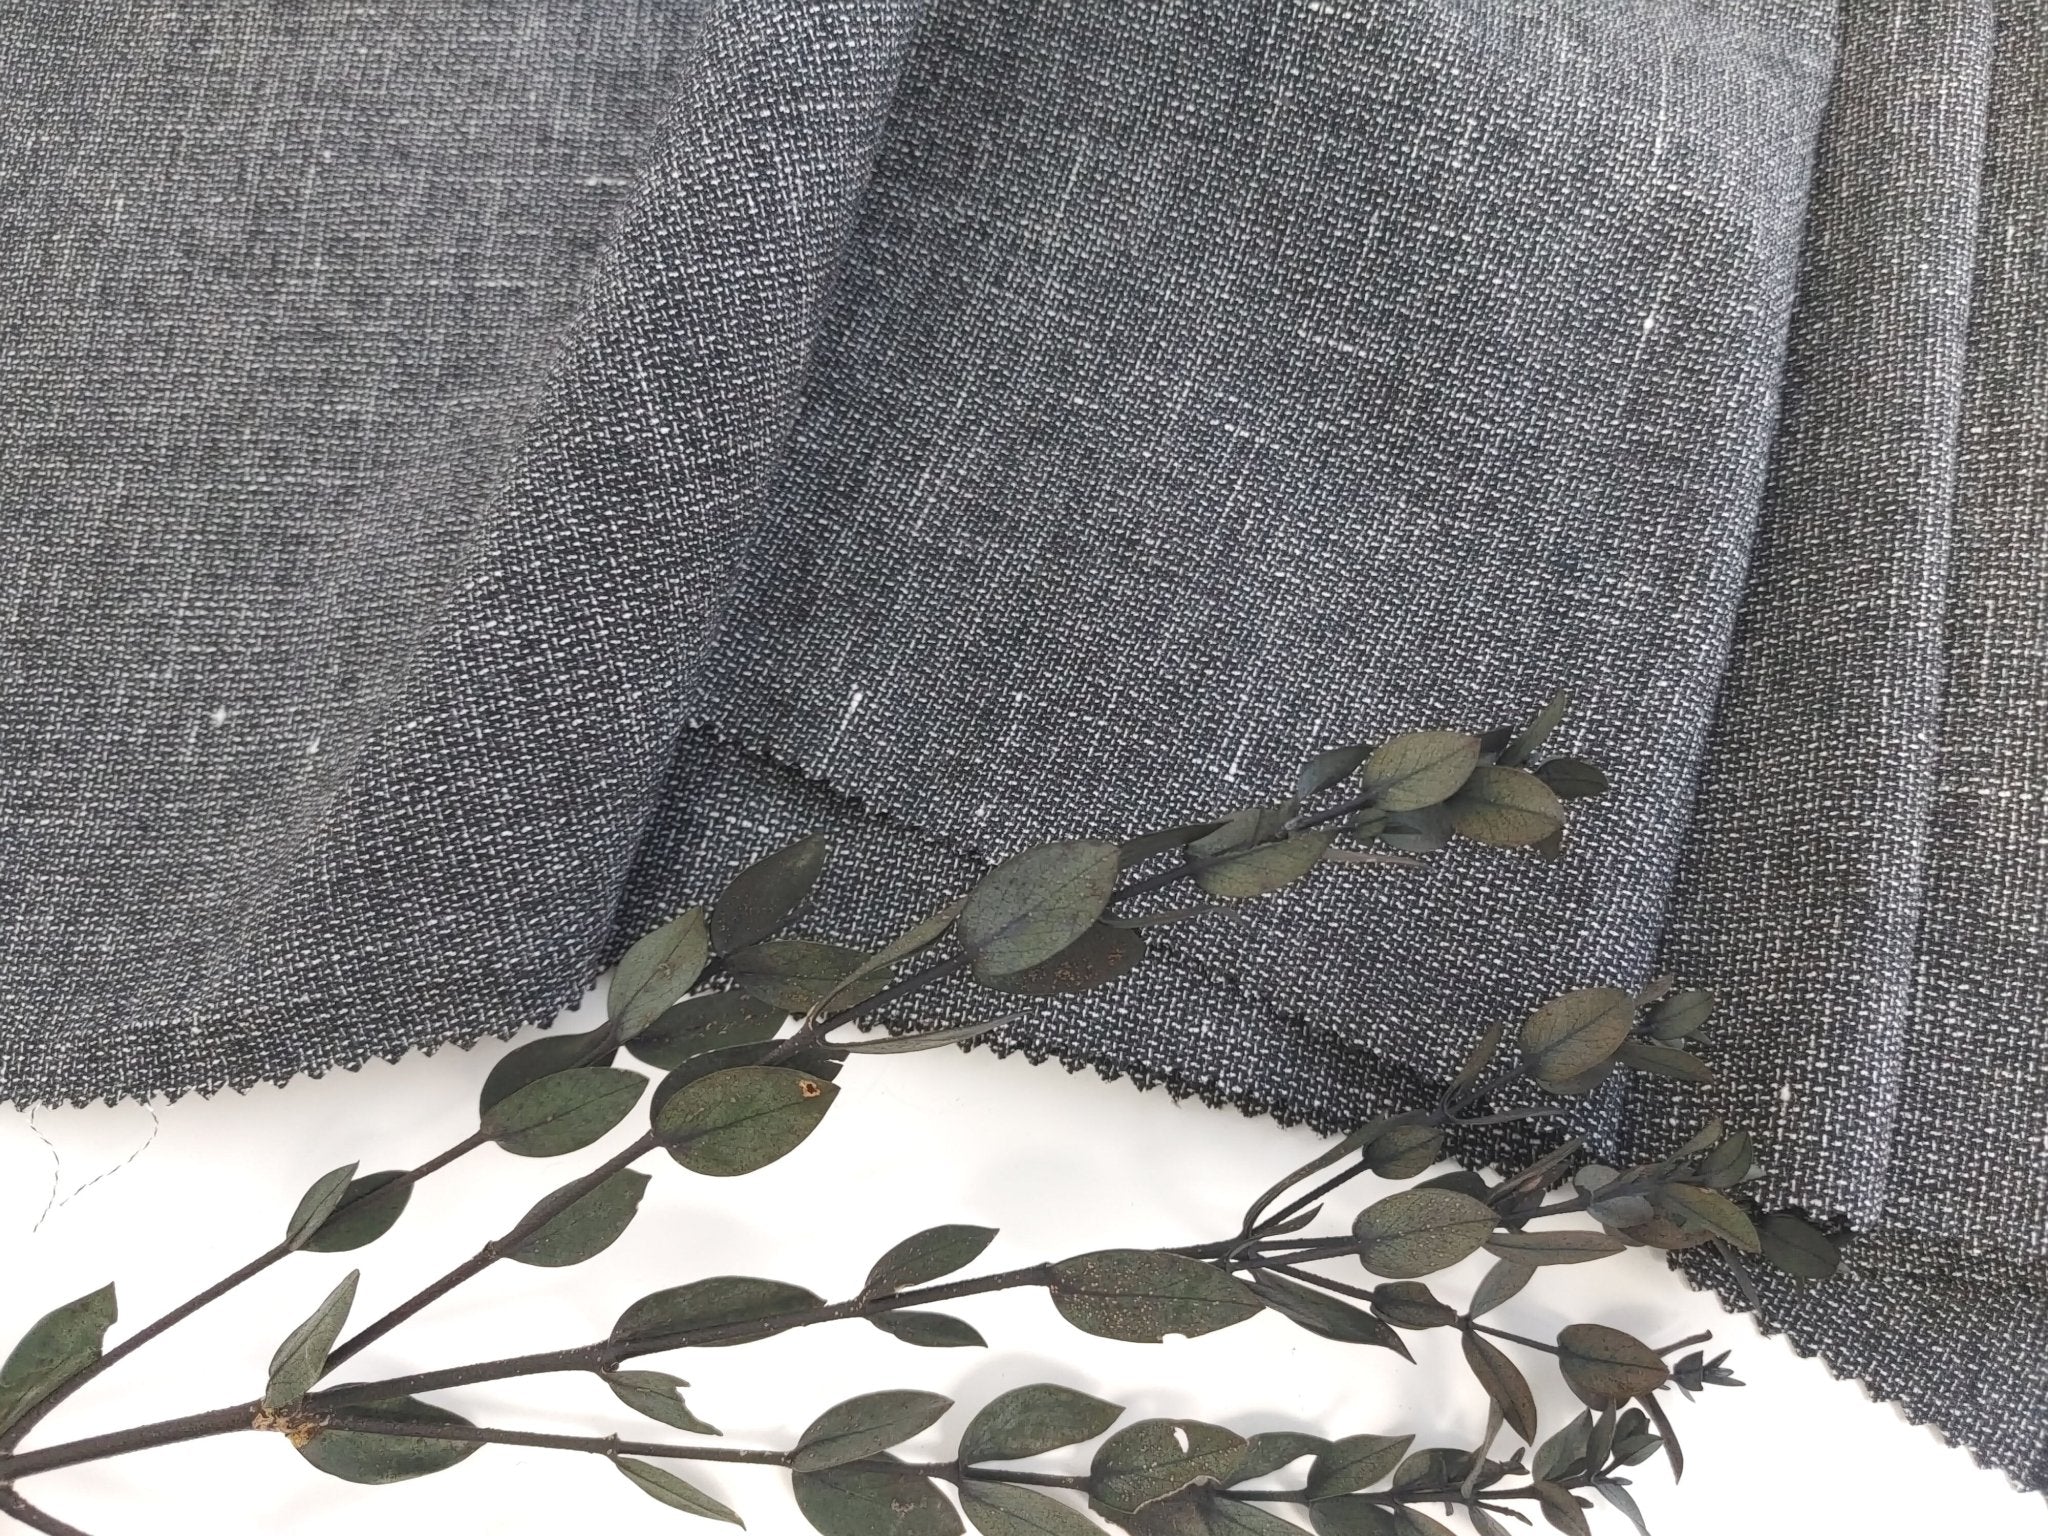 Dressmaking Fabric  Thalia Metallic Stripe Dobby Cotton - Off